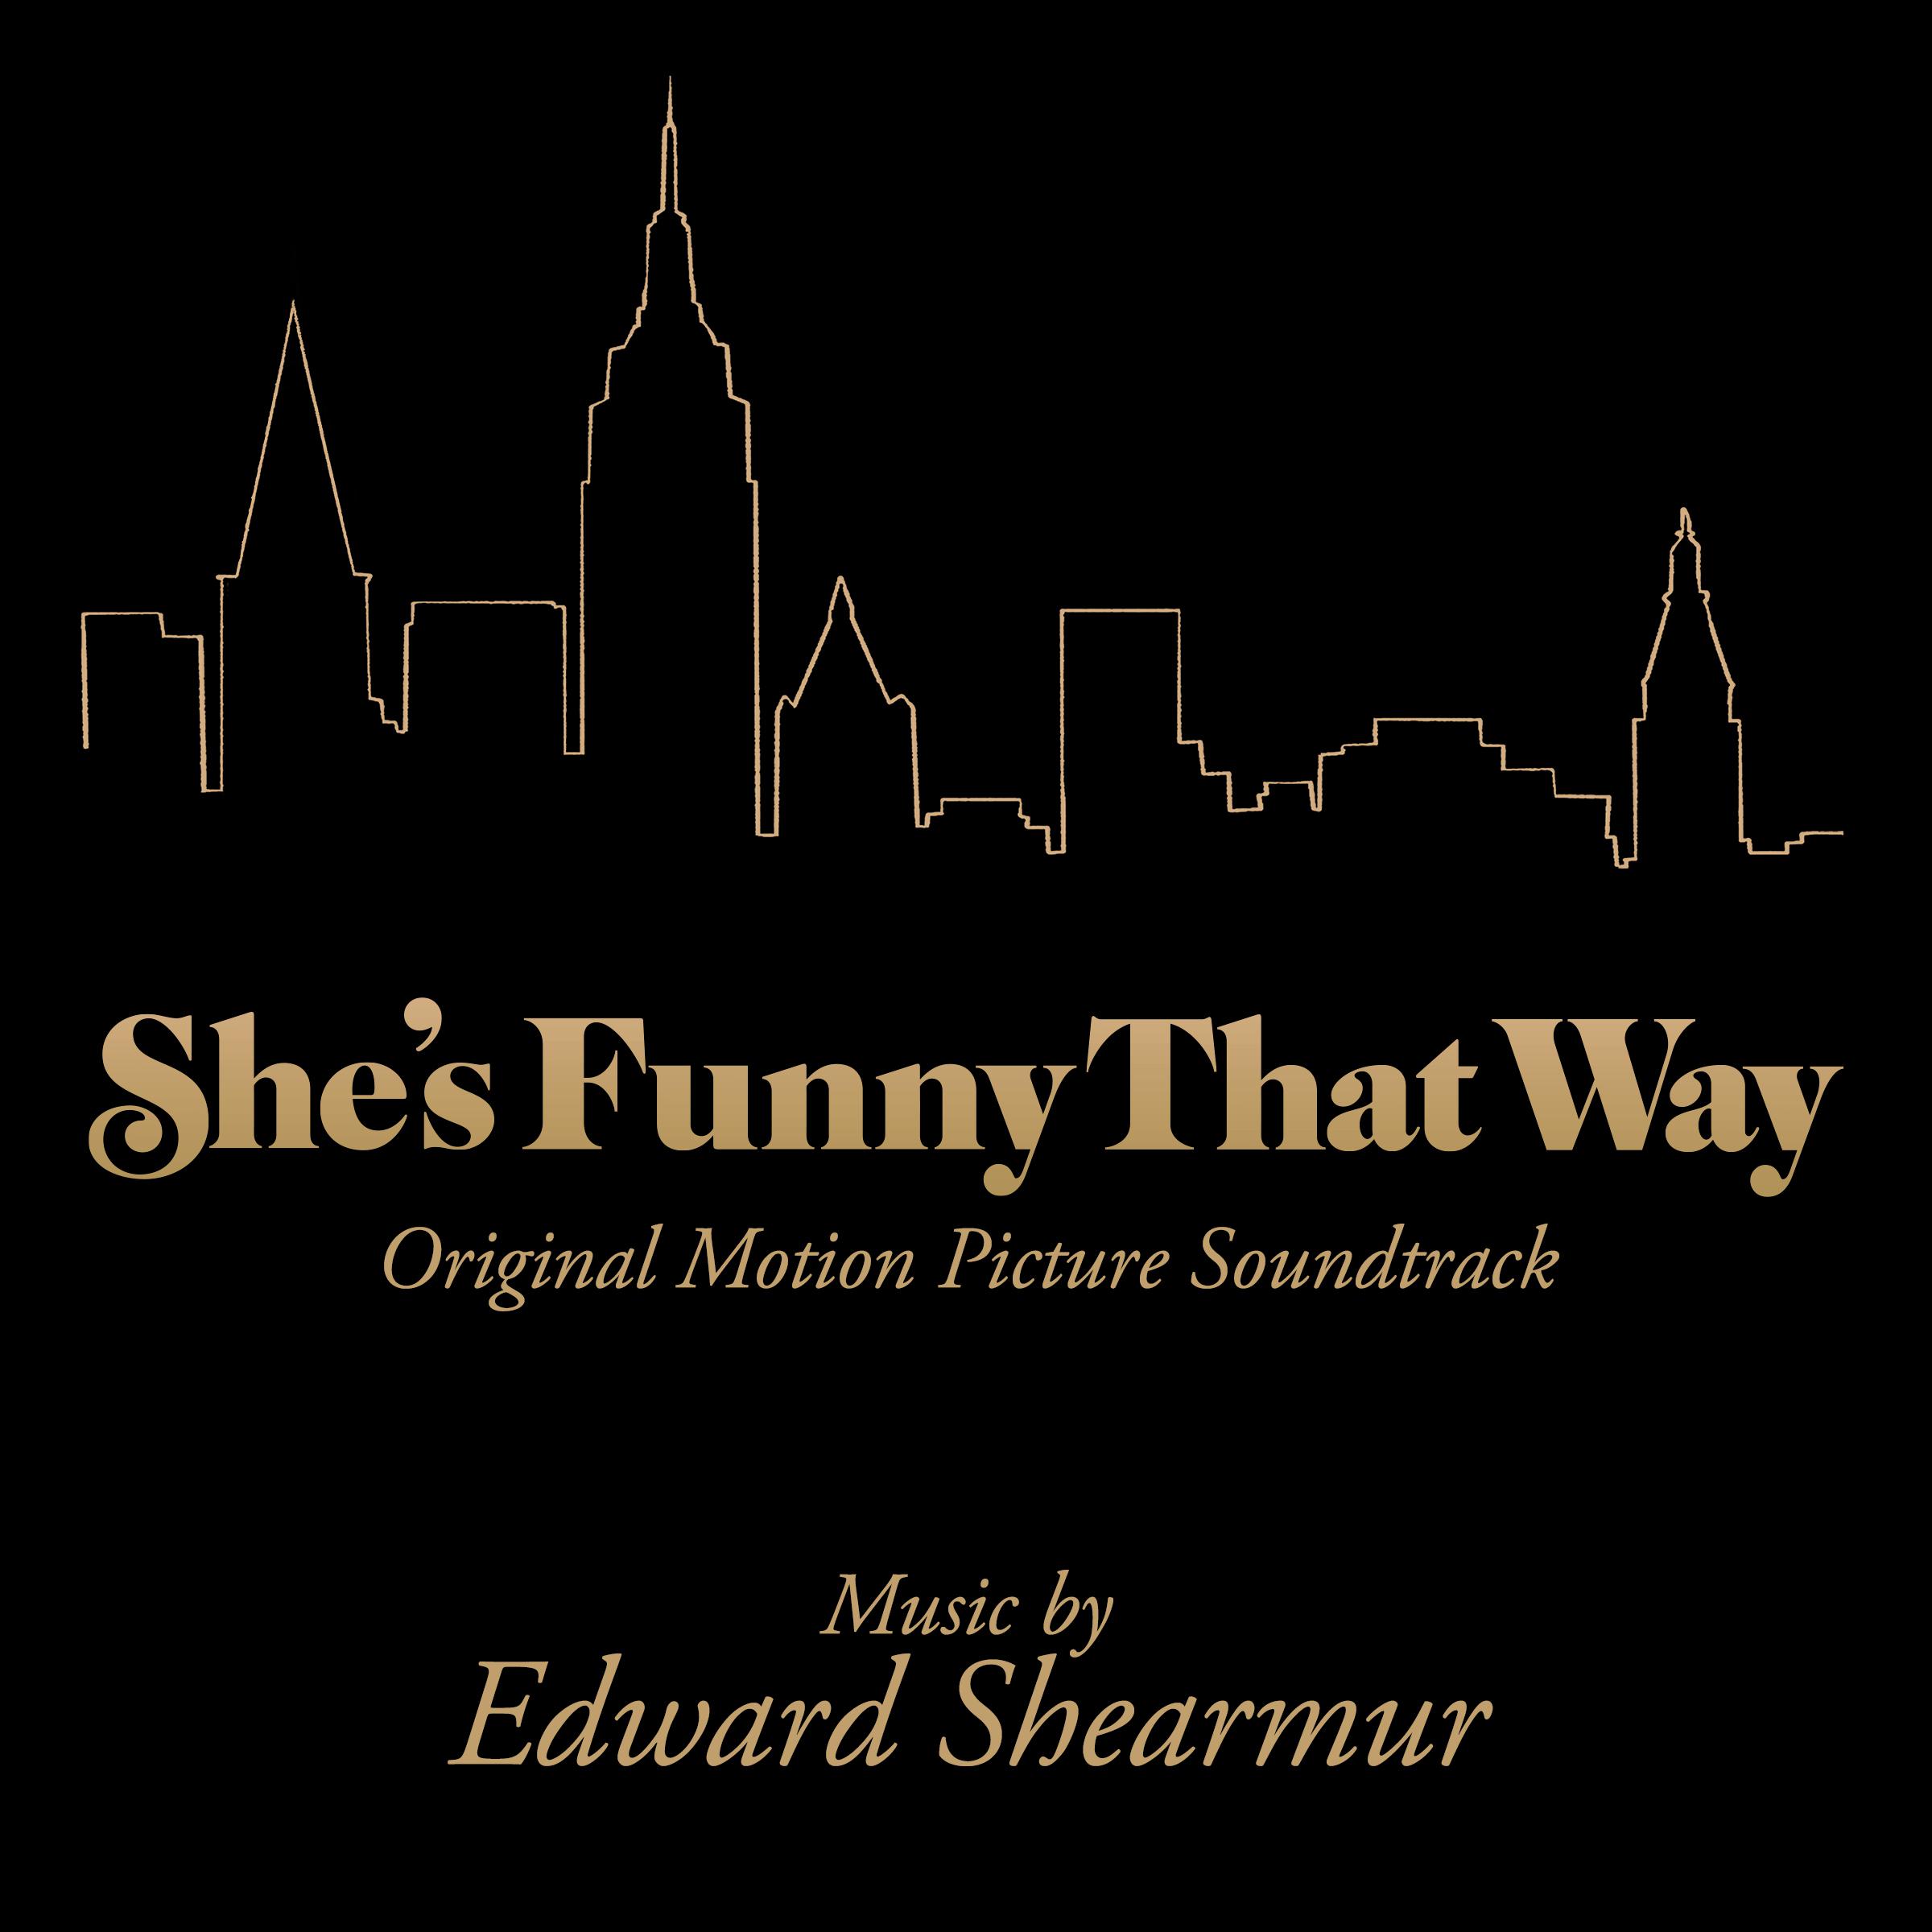 Edward Shearmur - Aftermath